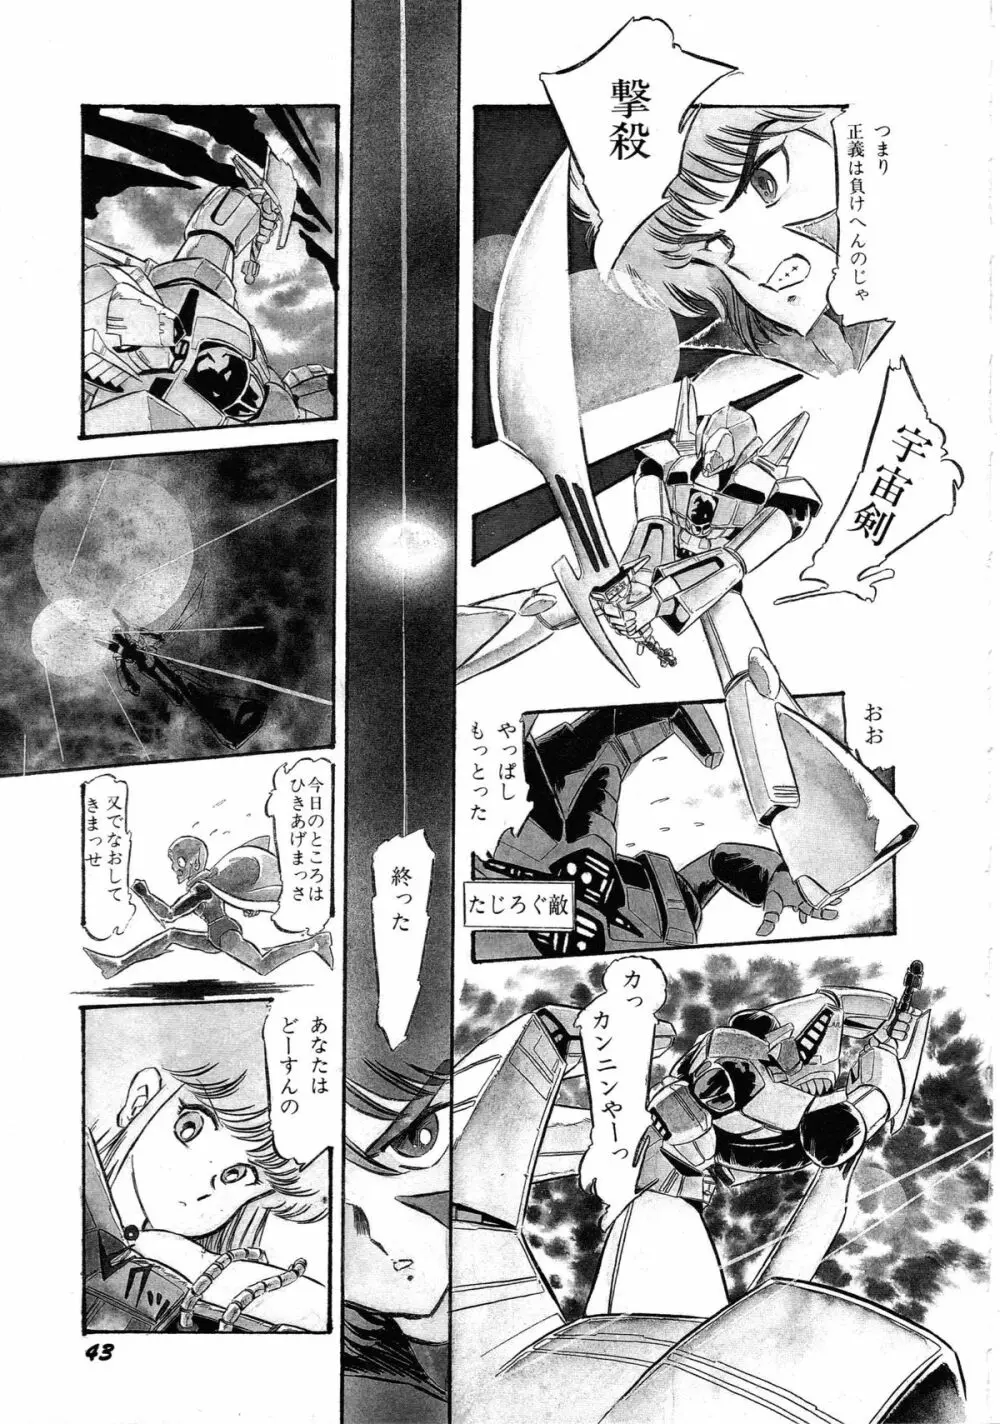 ロボット&美少女傑作選 レモン・ピープル1982-1986 45ページ